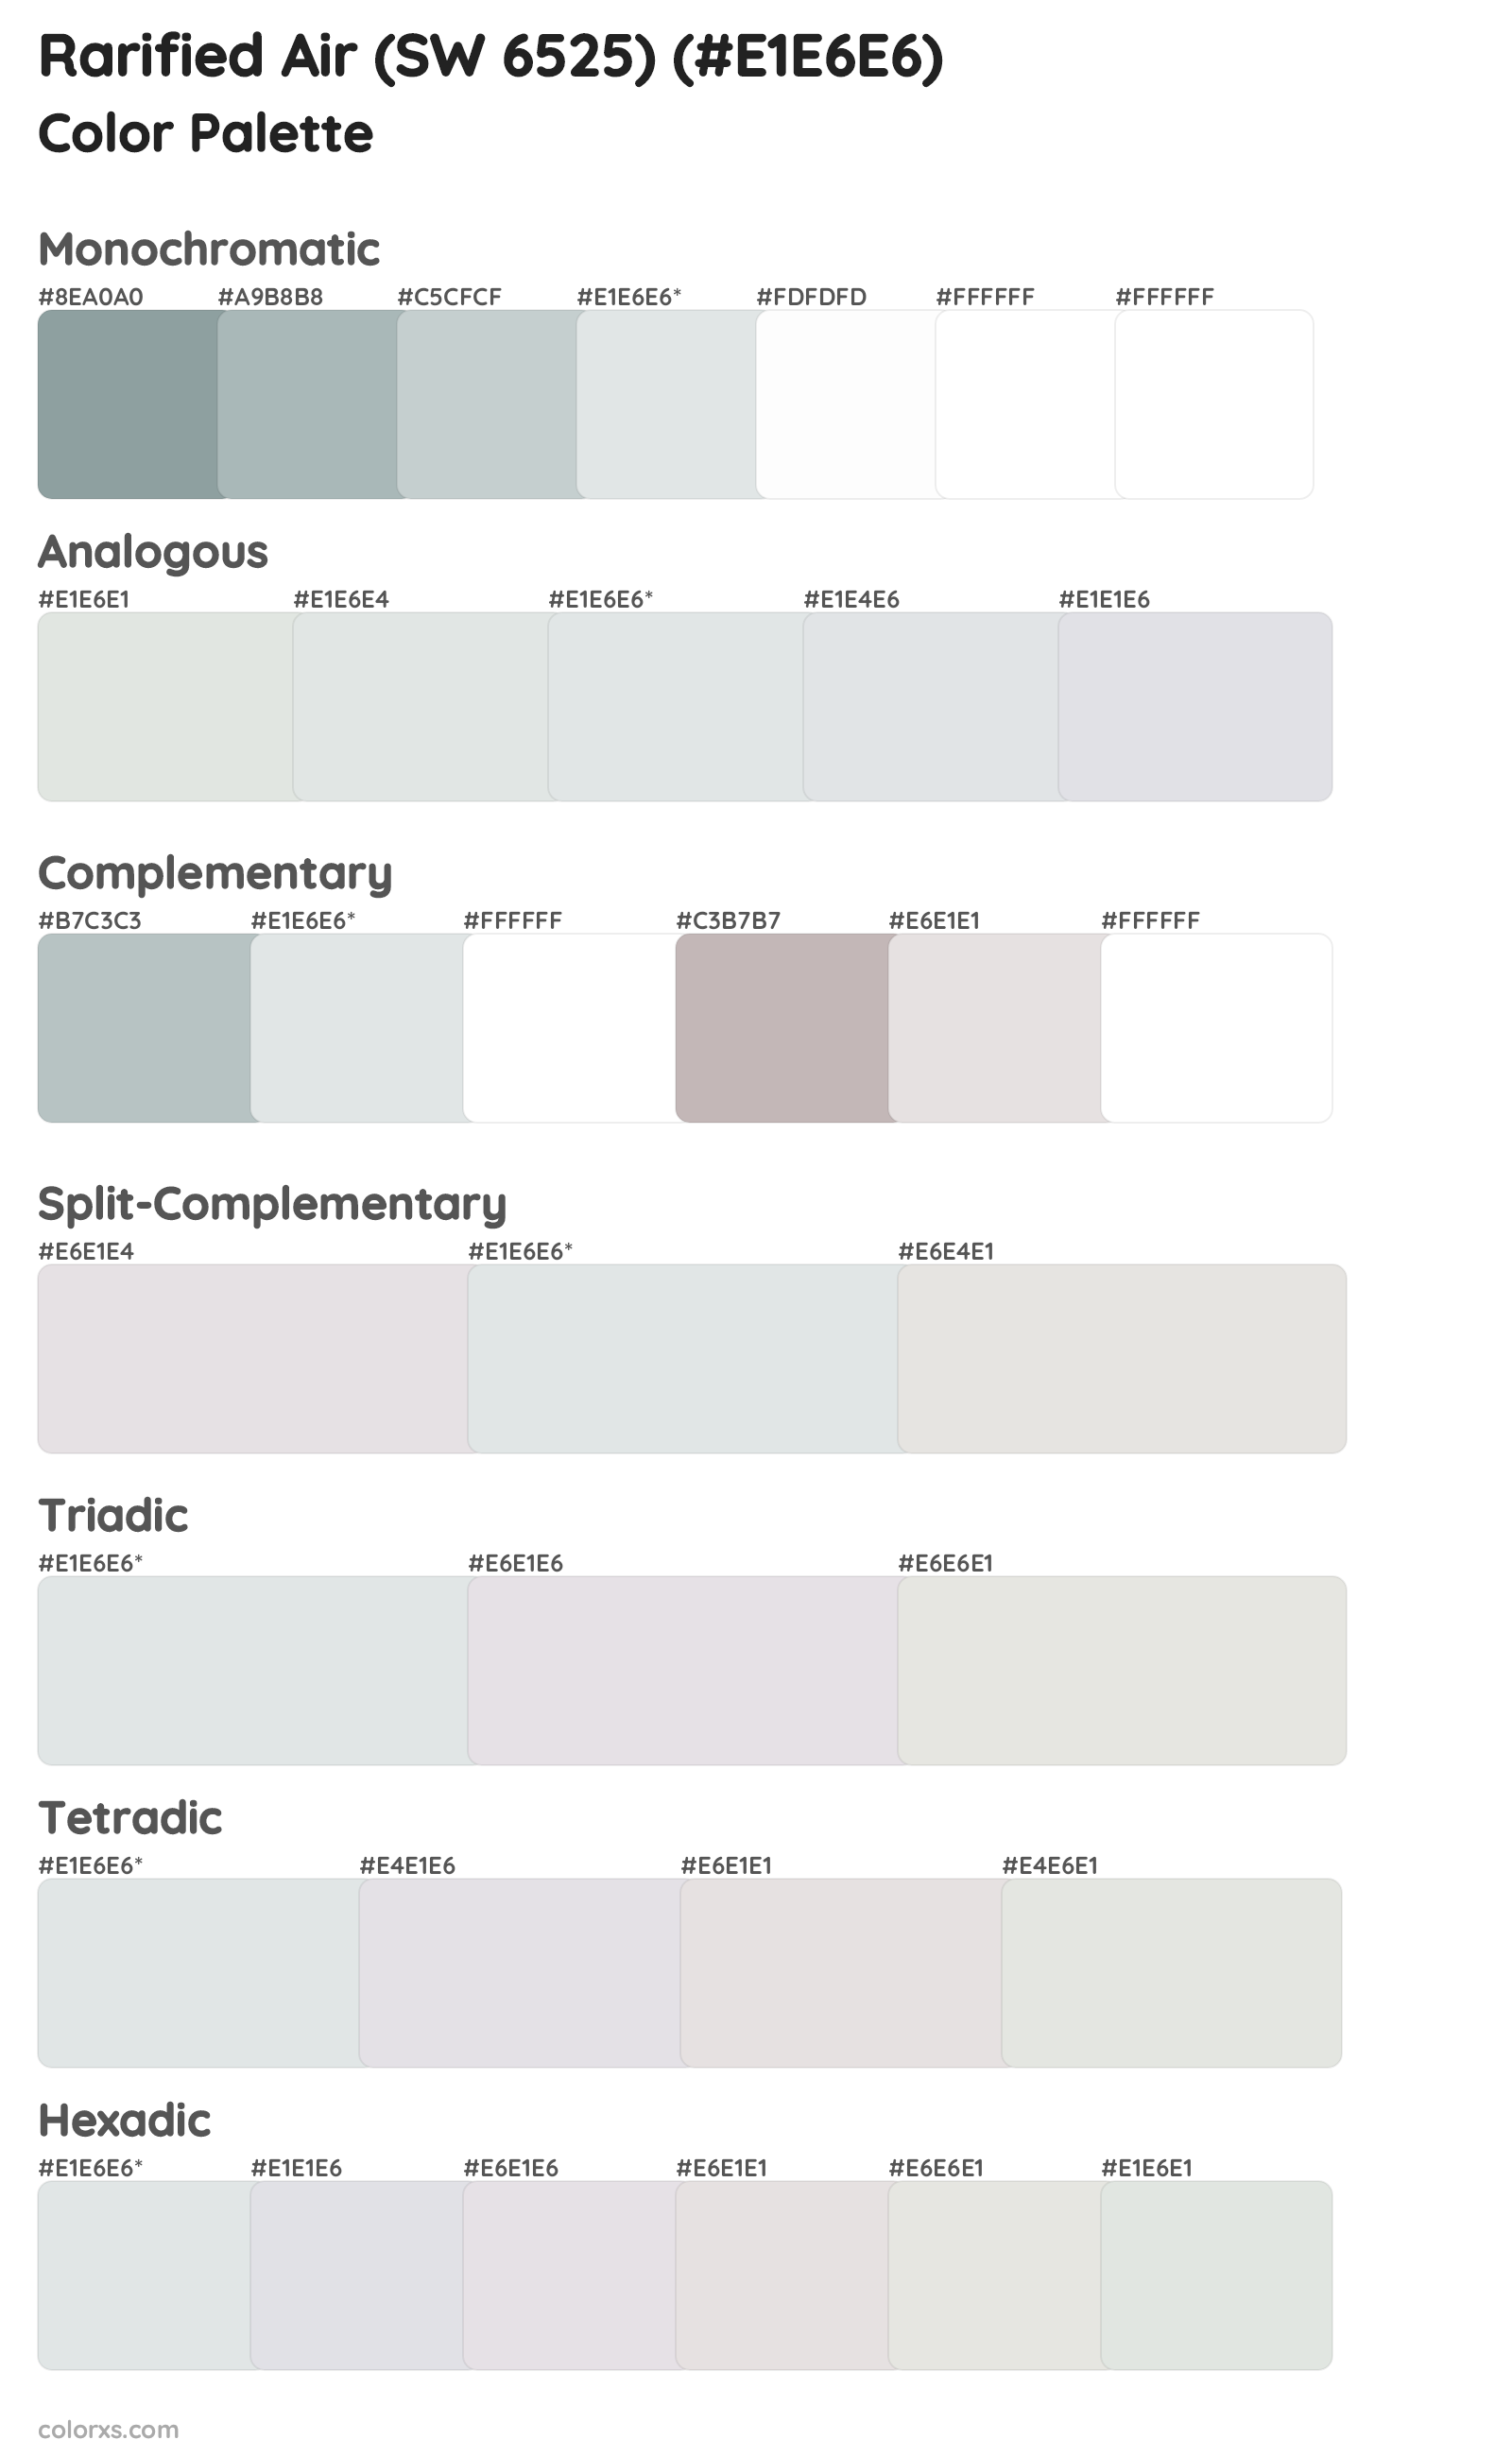 Rarified Air (SW 6525) Color Scheme Palettes